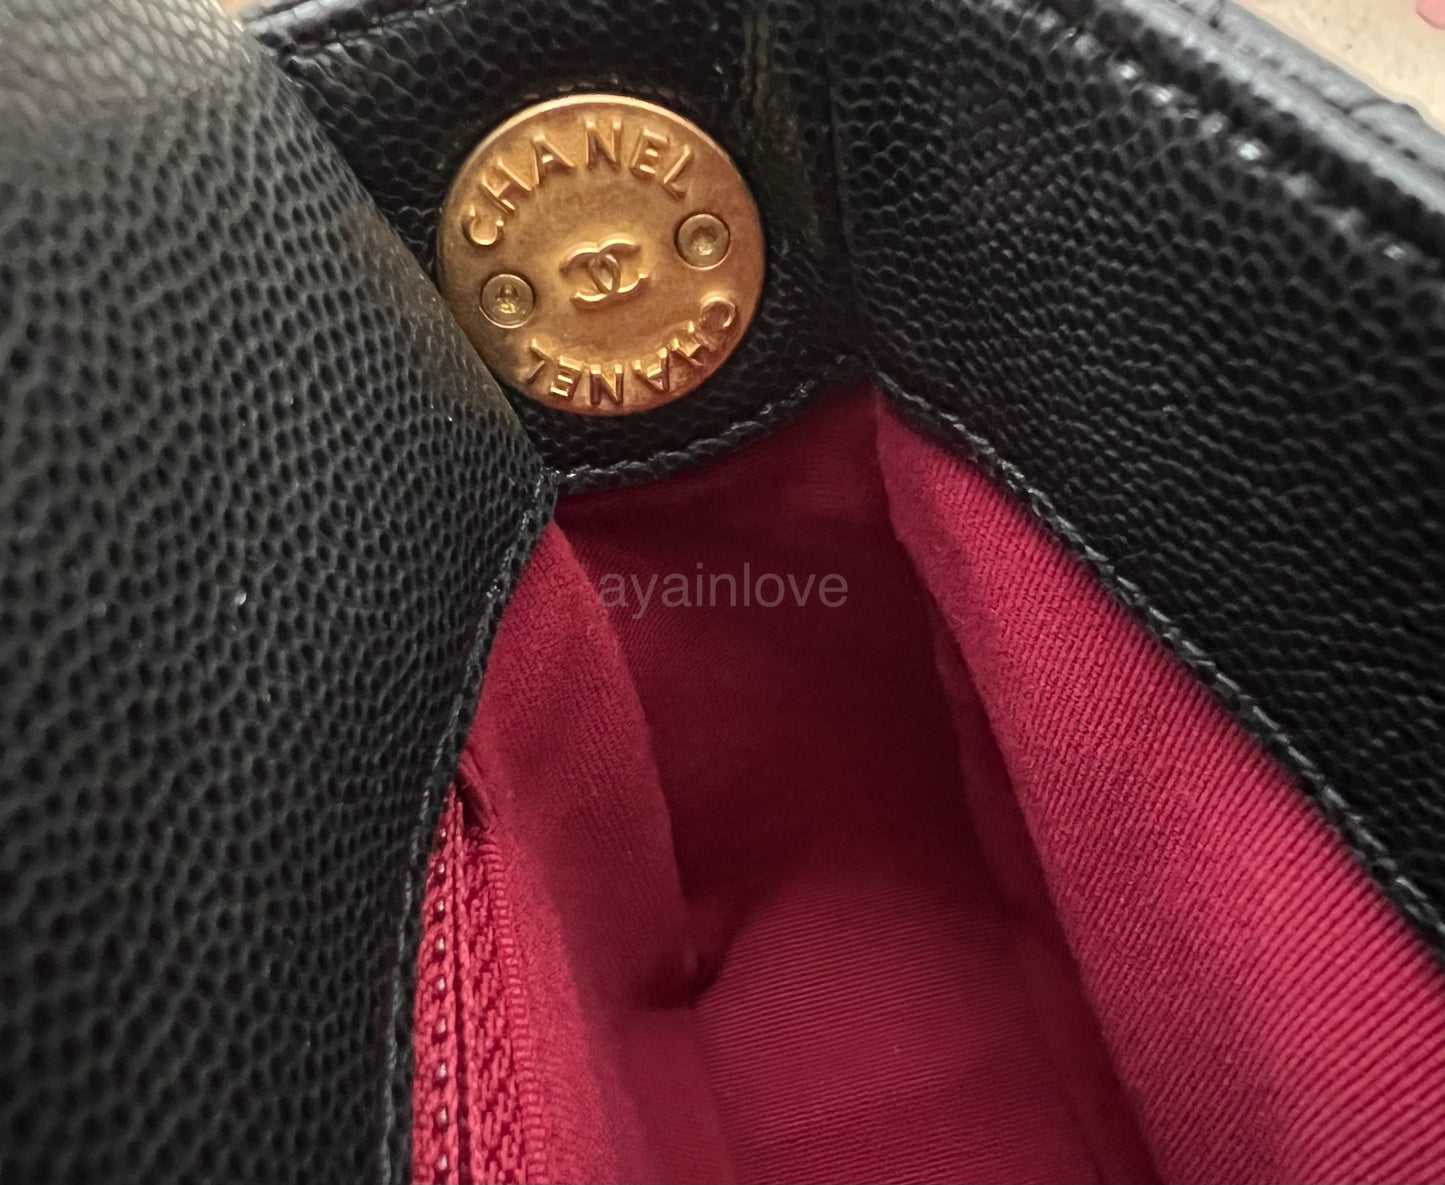 CHANEL 22A Black Caviar Twist Your Buttons 21cm Mini Flap Bag Gold